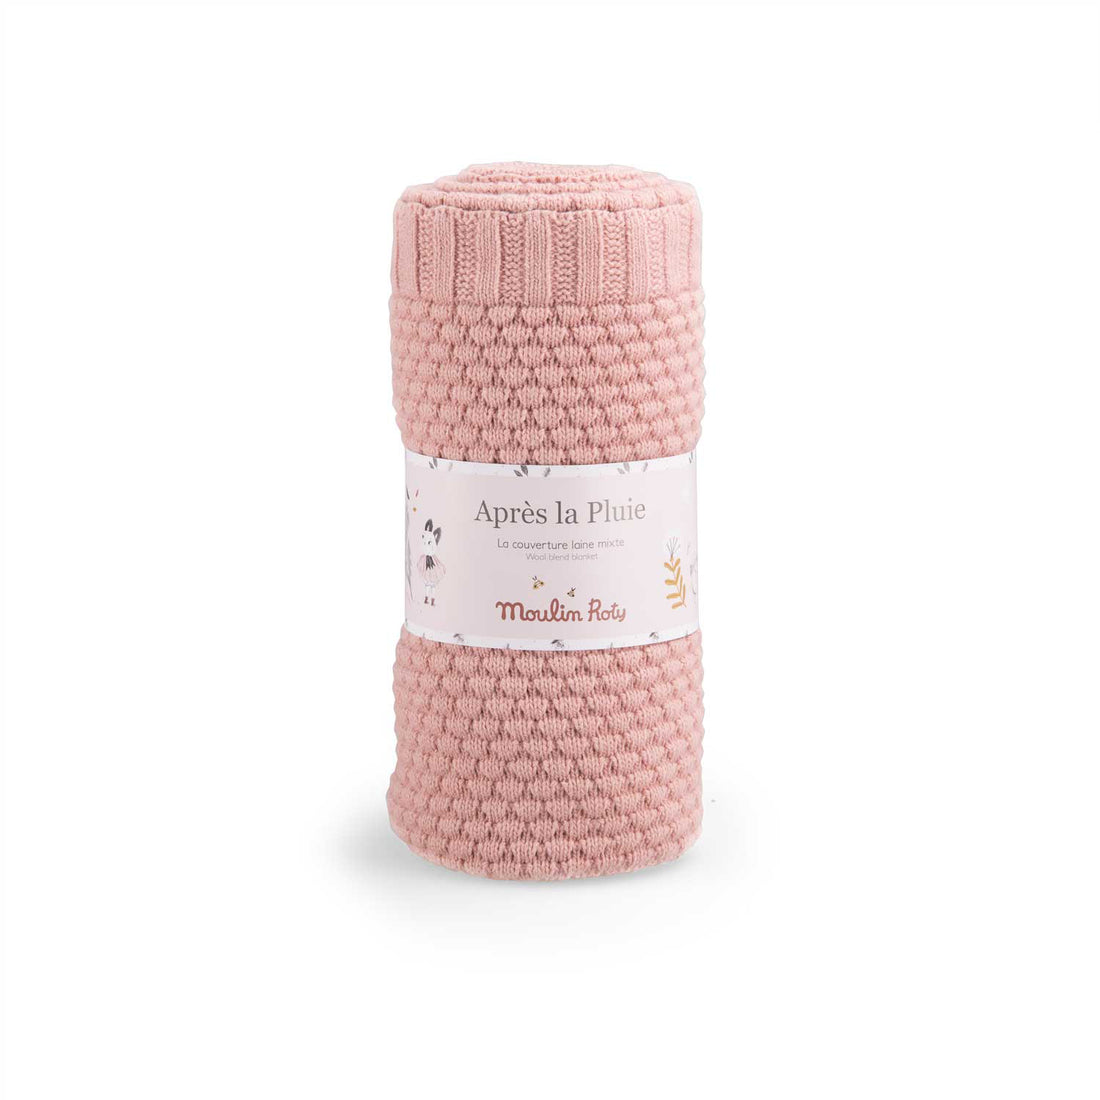 moulin-roty-apres-la-pluie-pink-knited-blanket-wool-blend-moul-715089